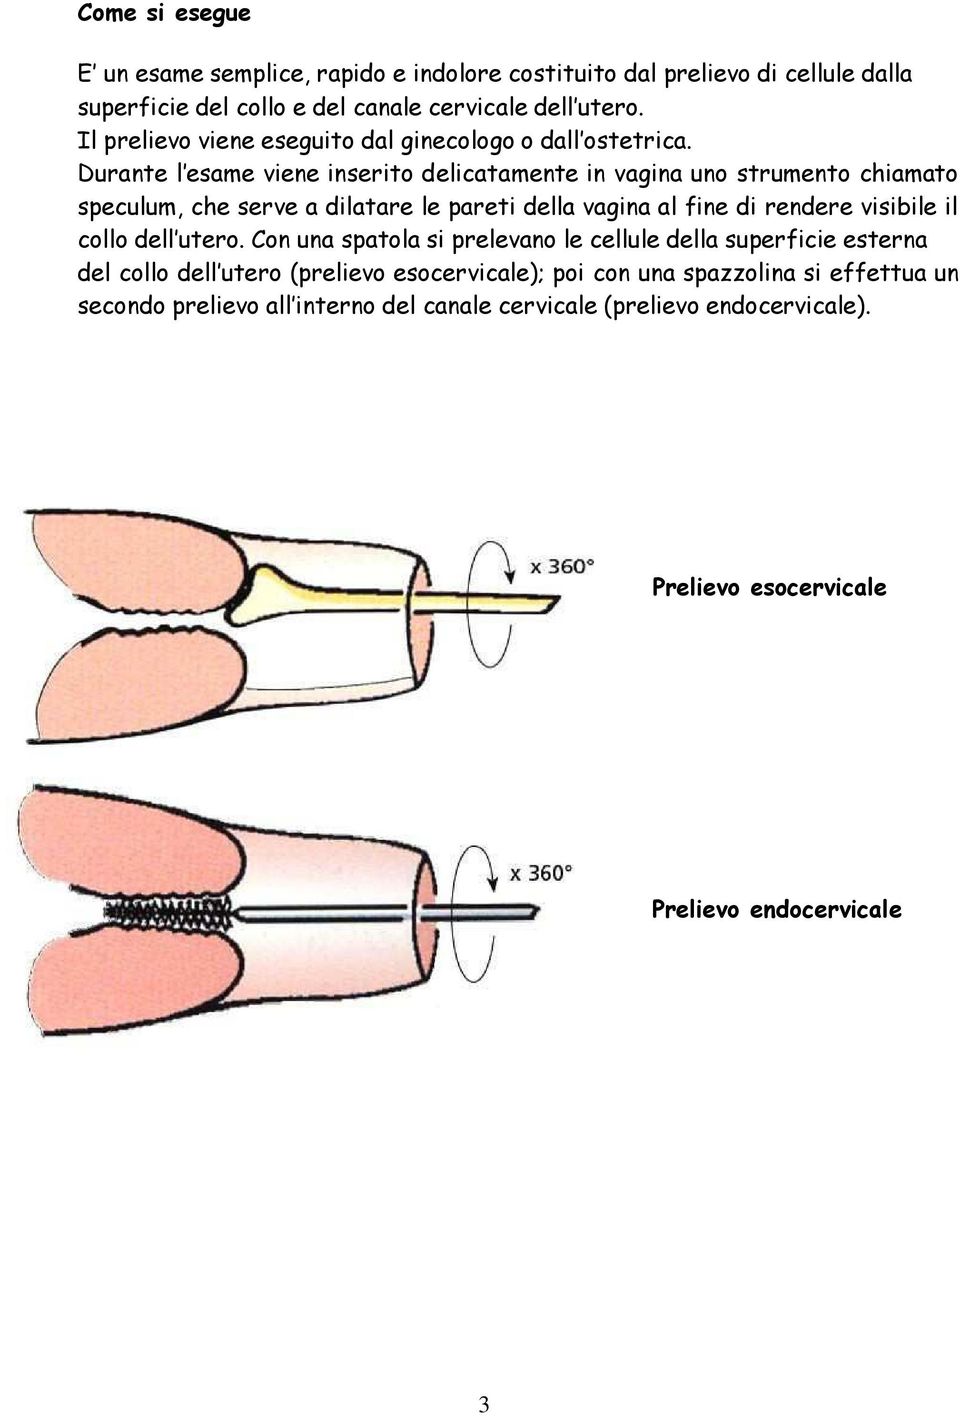 Durante l esame viene inserito delicatamente in vagina uno strumento chiamato speculum, che serve a dilatare le pareti della vagina al fine di rendere visibile il